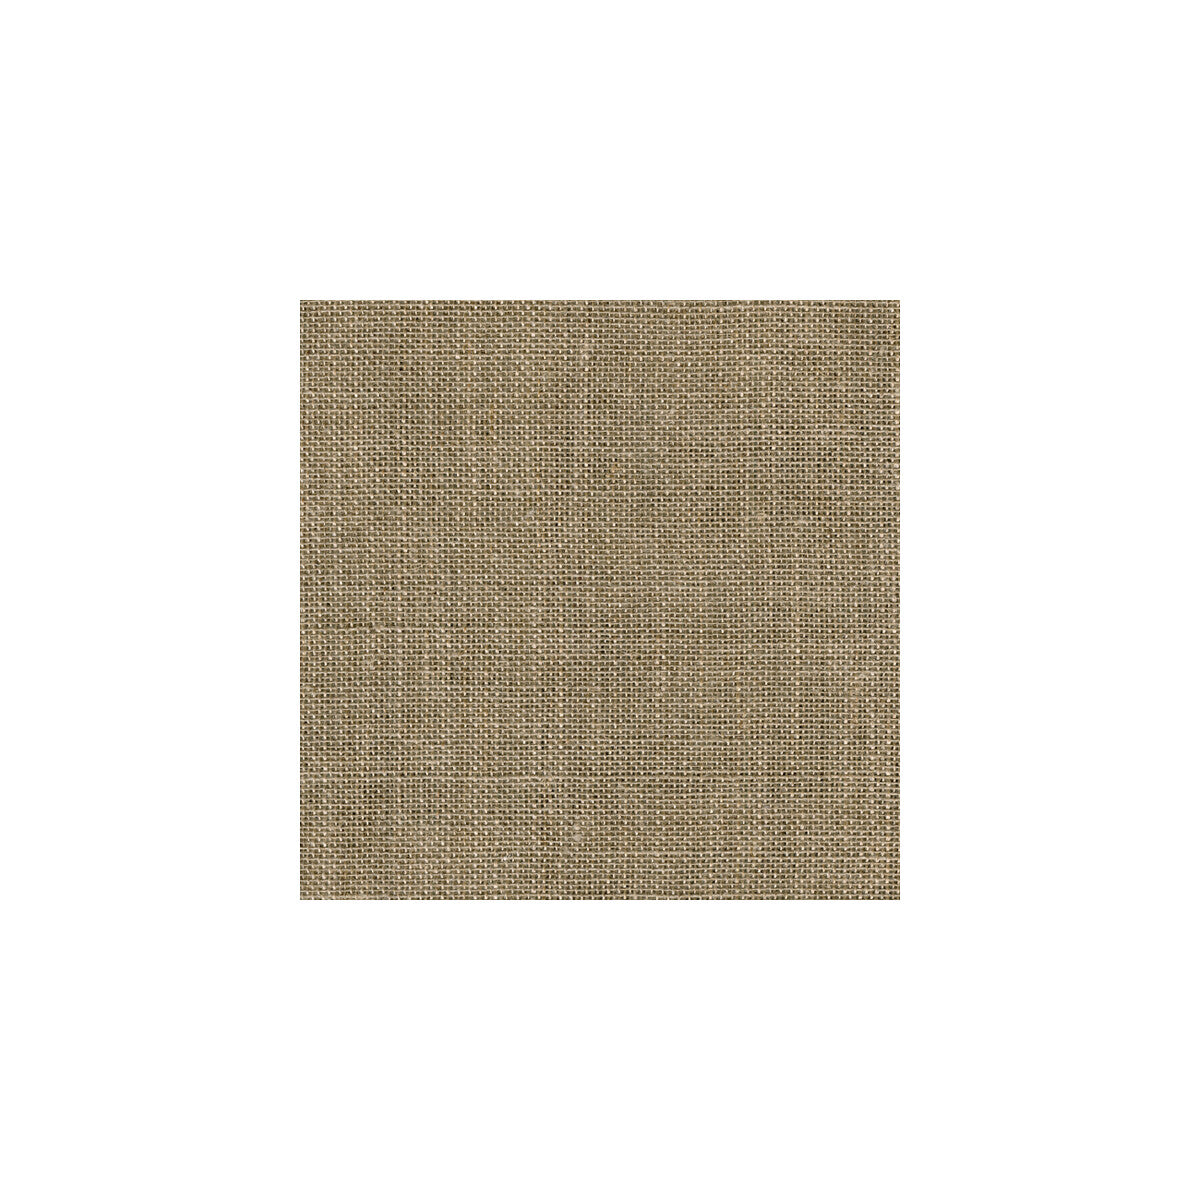 Kravet Basics fabric in 9809-16 color - pattern 9809.16.0 - by Kravet Basics in the Kravetgreen collection